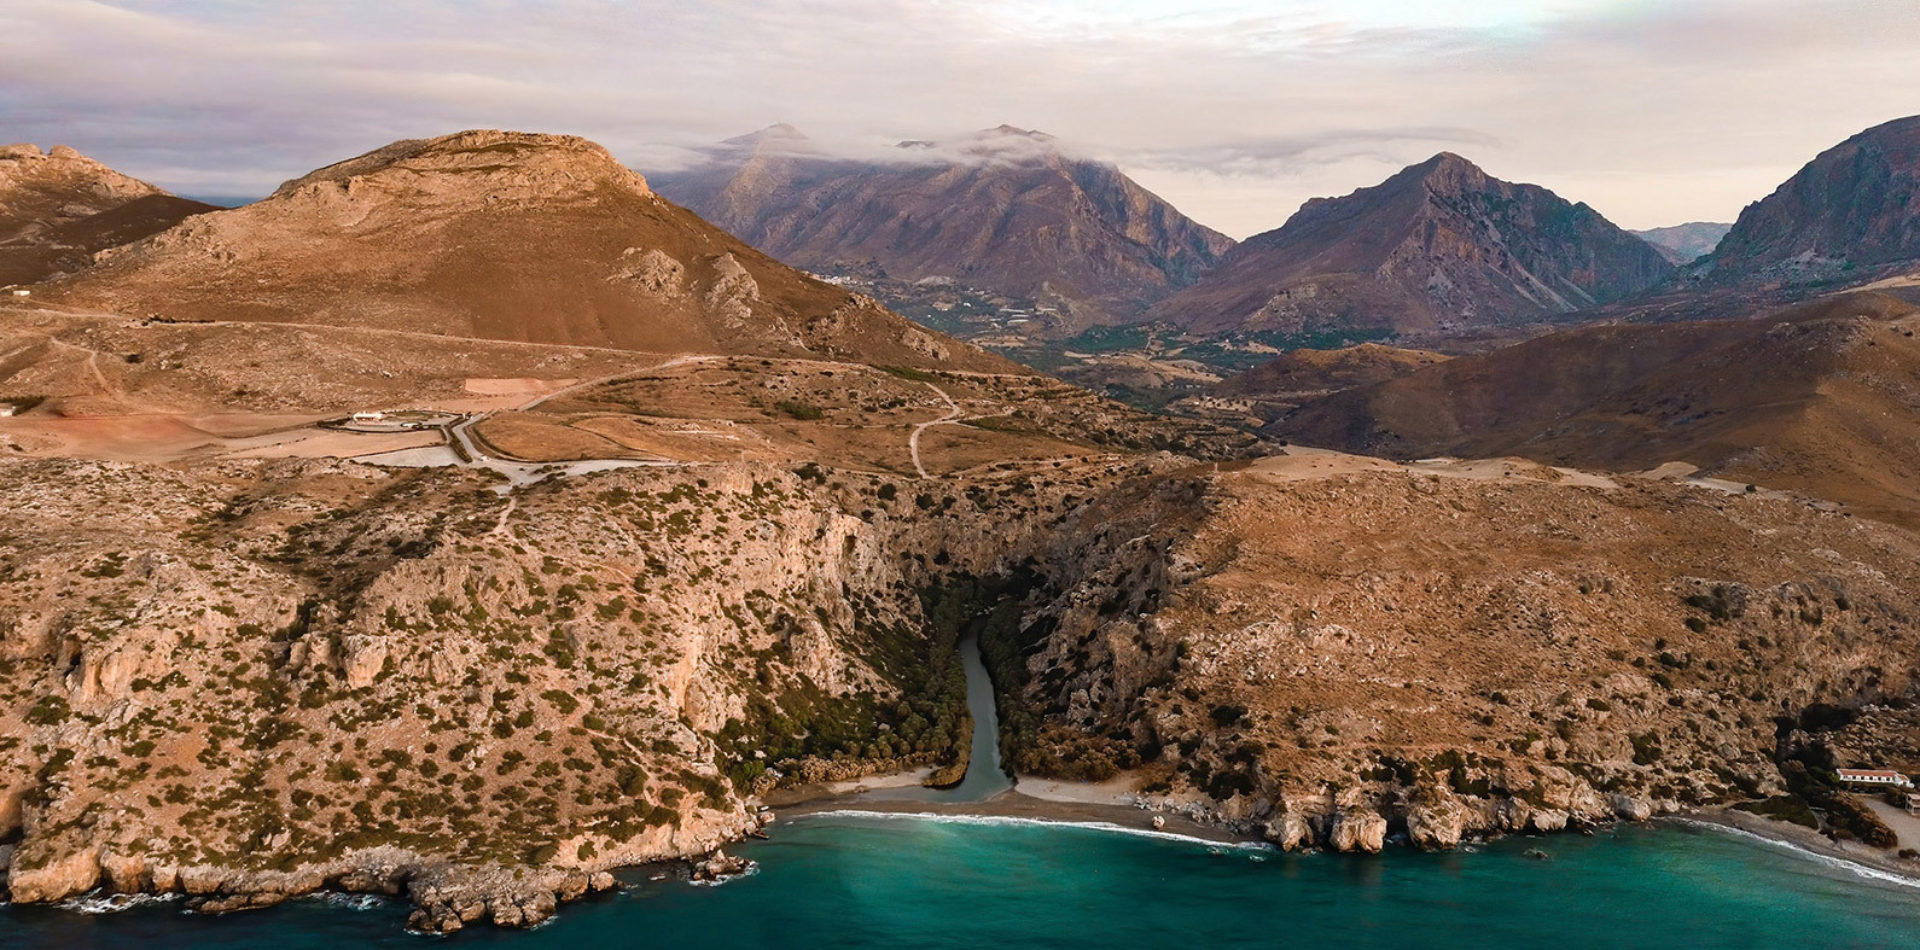 Crete is the island of Gods